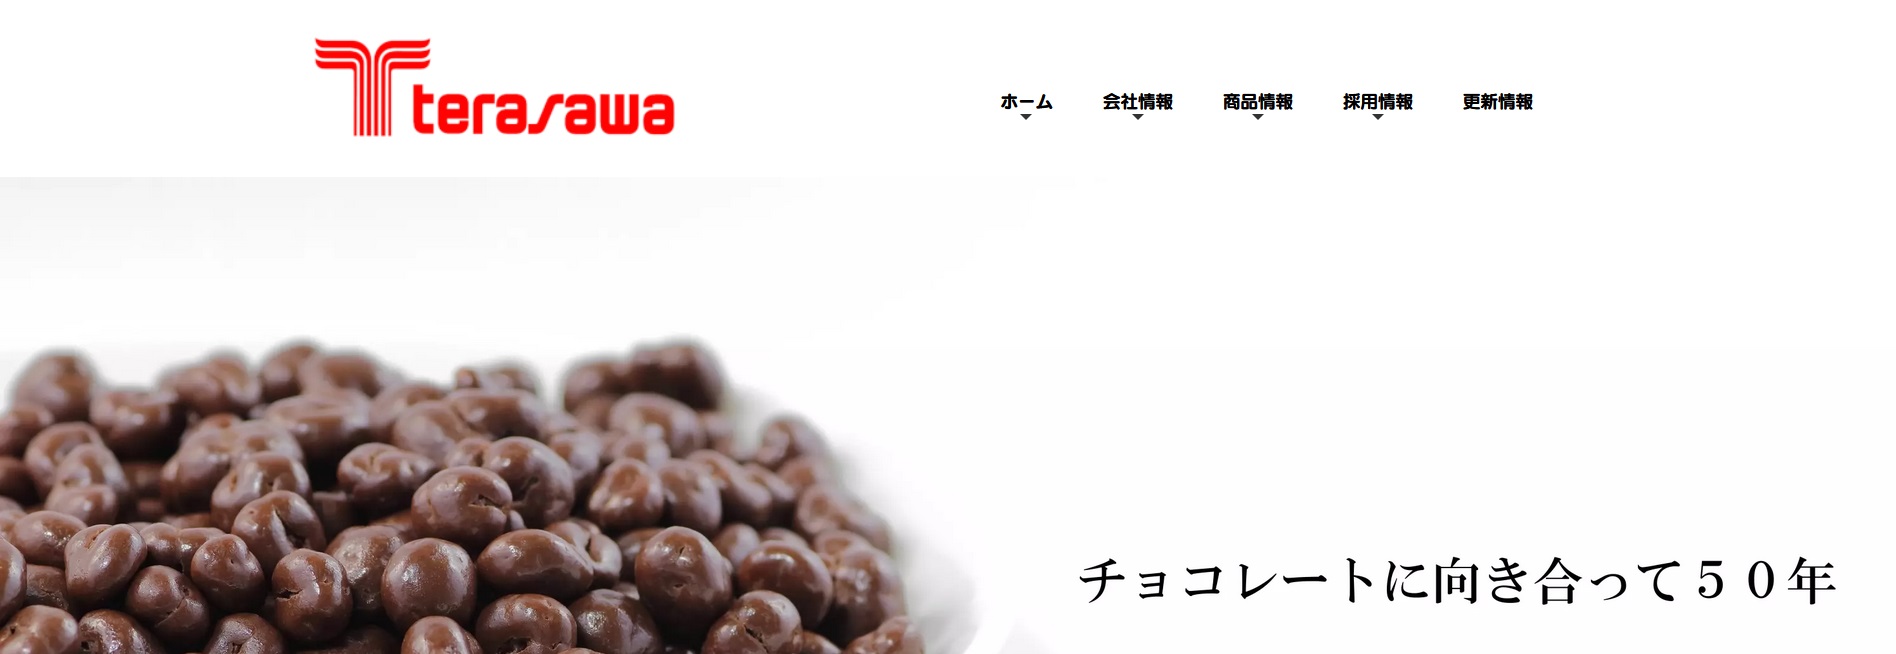 寺沢製菓のホームページの画像